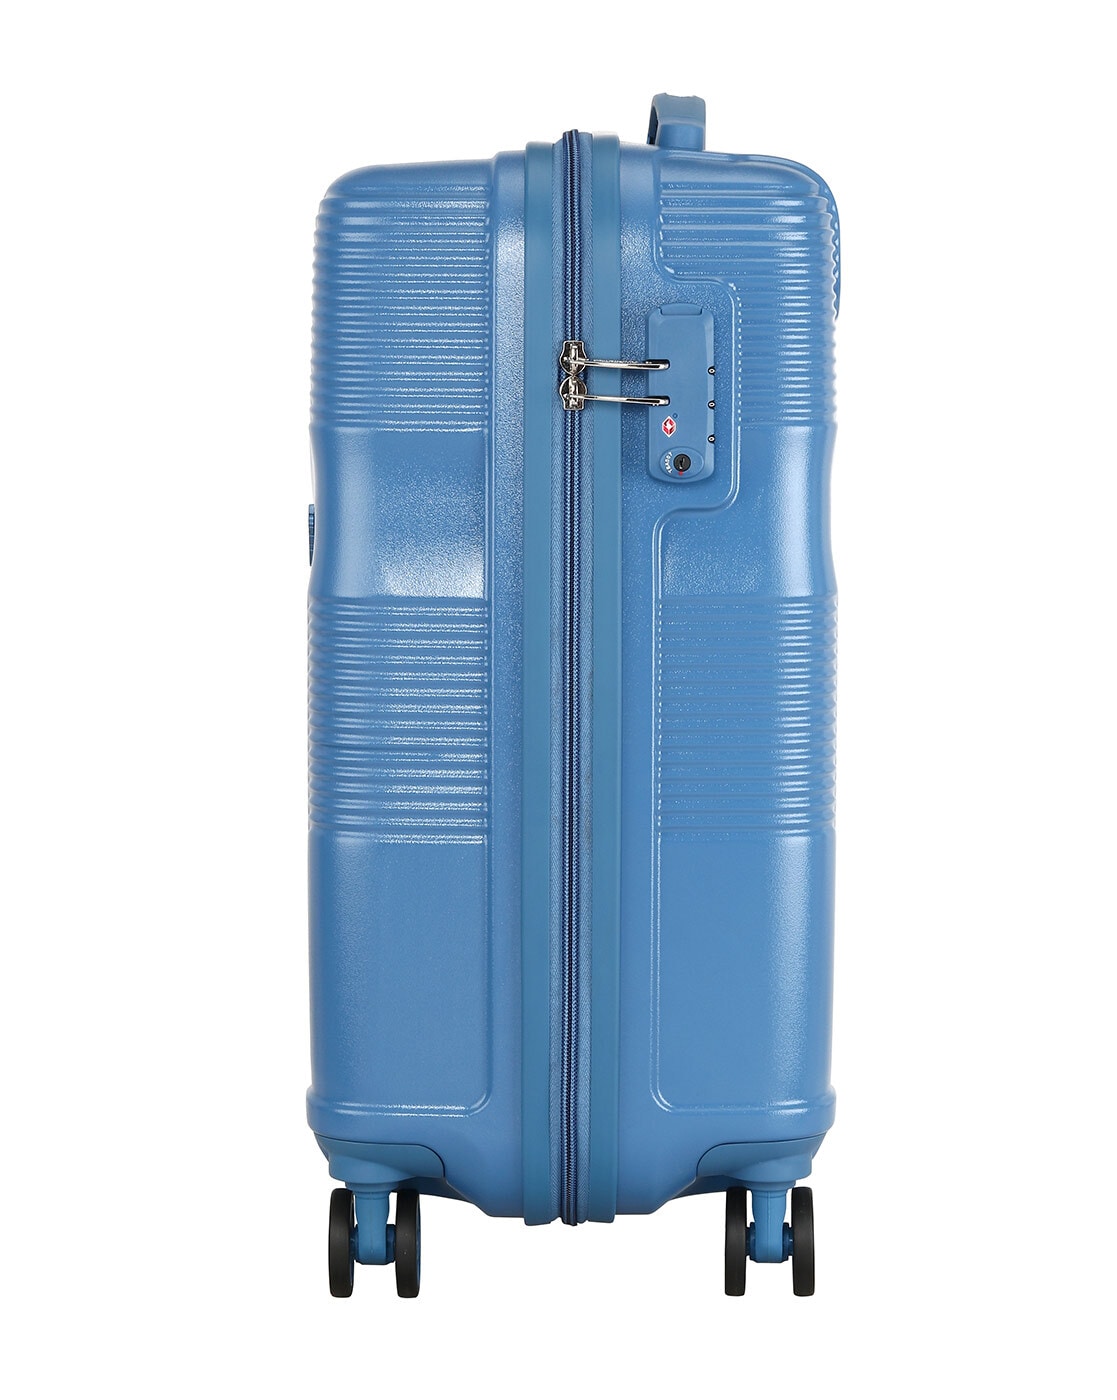 Luggage Bag / Medium Luggage Bag / Medium Travel Bag/ Medium Trolley Bag,  Hobbies & Toys, Travel, Luggage on Carousell